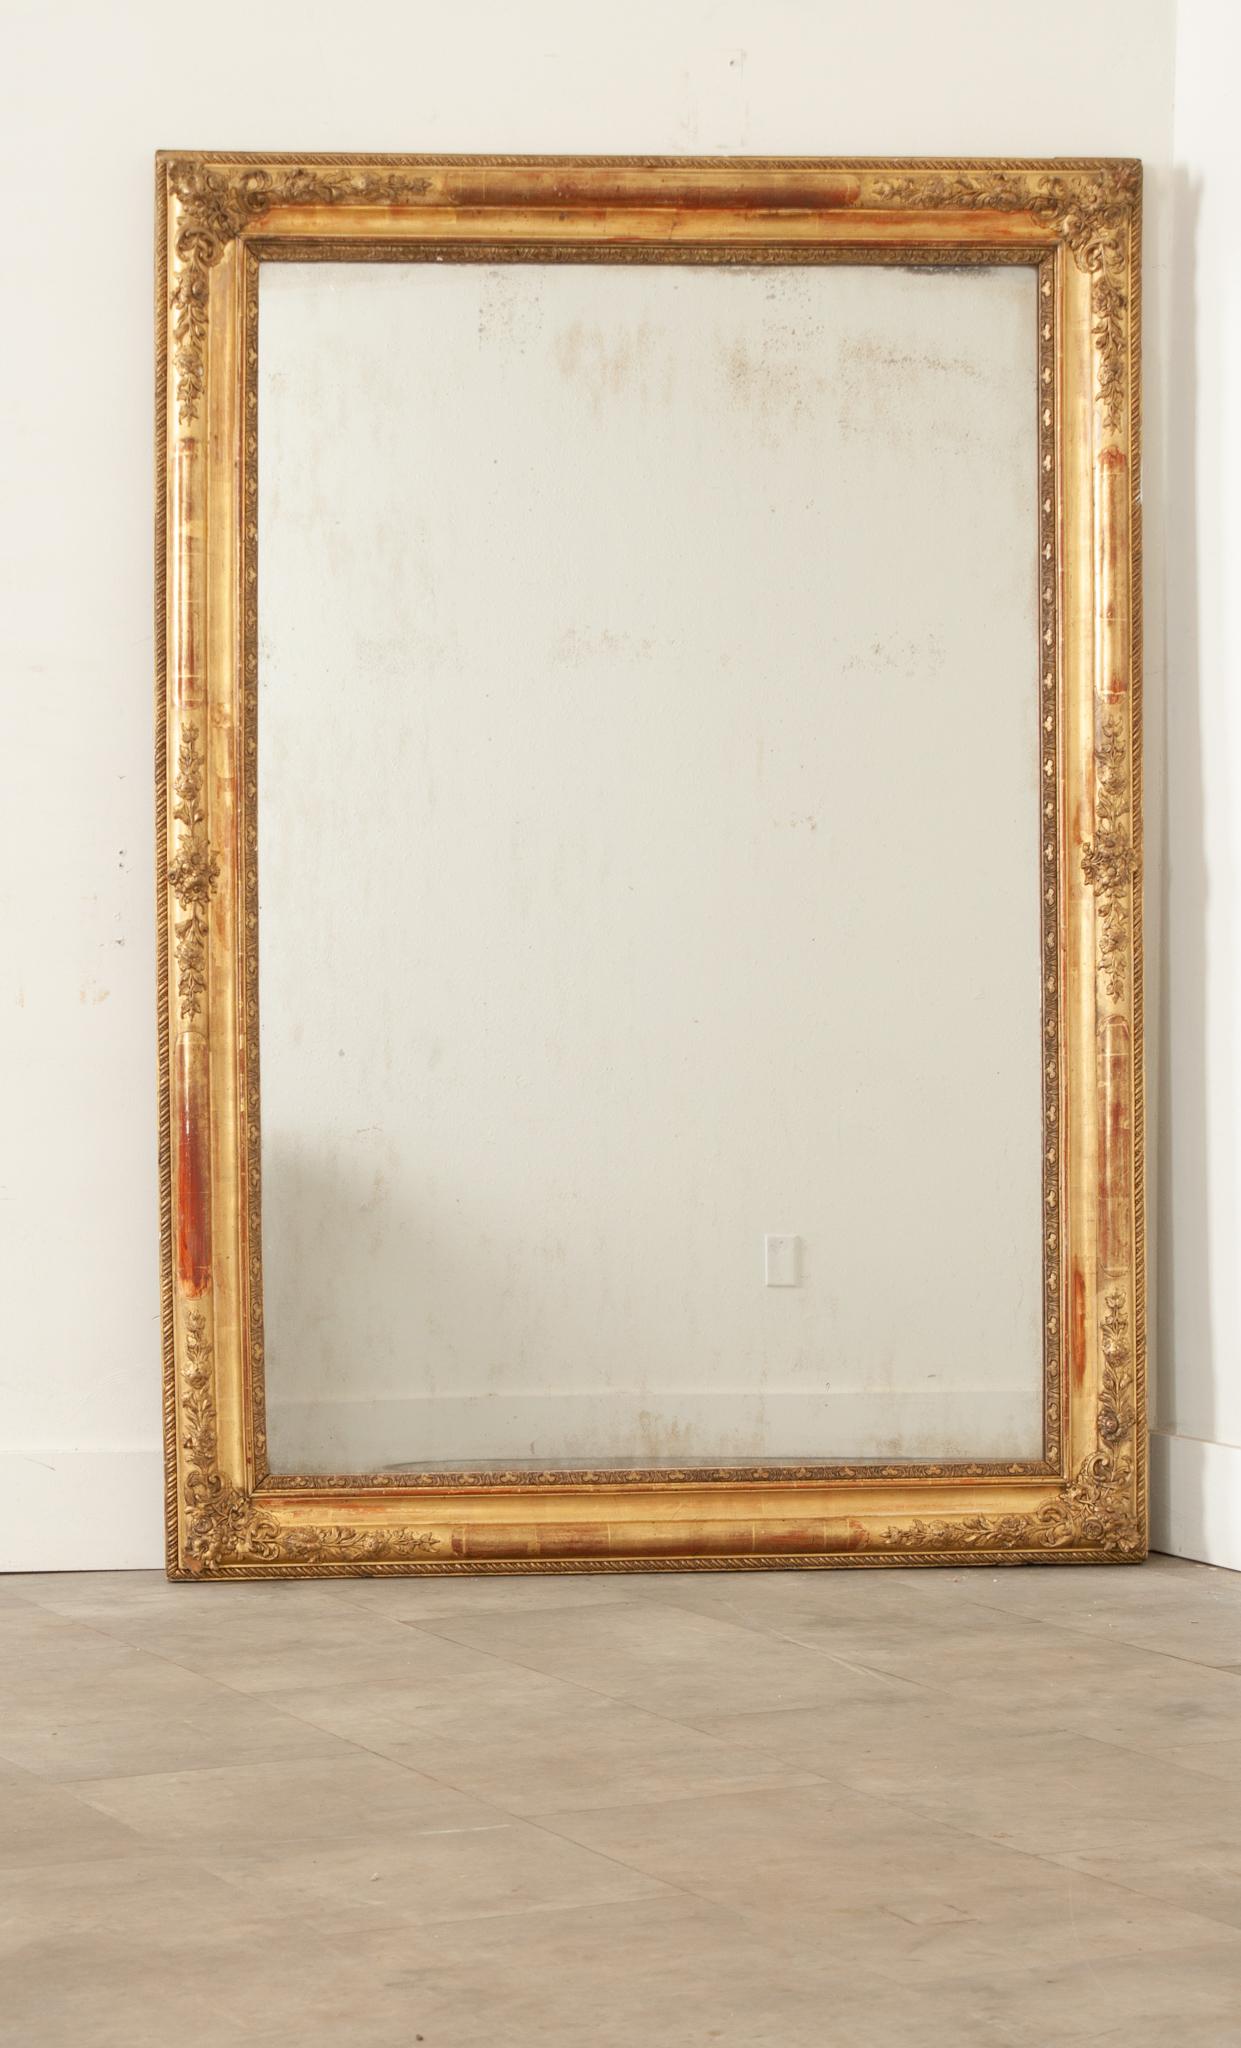 Ein französischer goldgerahmter Spiegel aus dem 19. Die originale Spiegelplatte ist in einem aufwändig geschnitzten und geformten Rahmen an allen vier Seiten mit sich wiederholenden Motiven und floralen Akzenten befestigt. In der